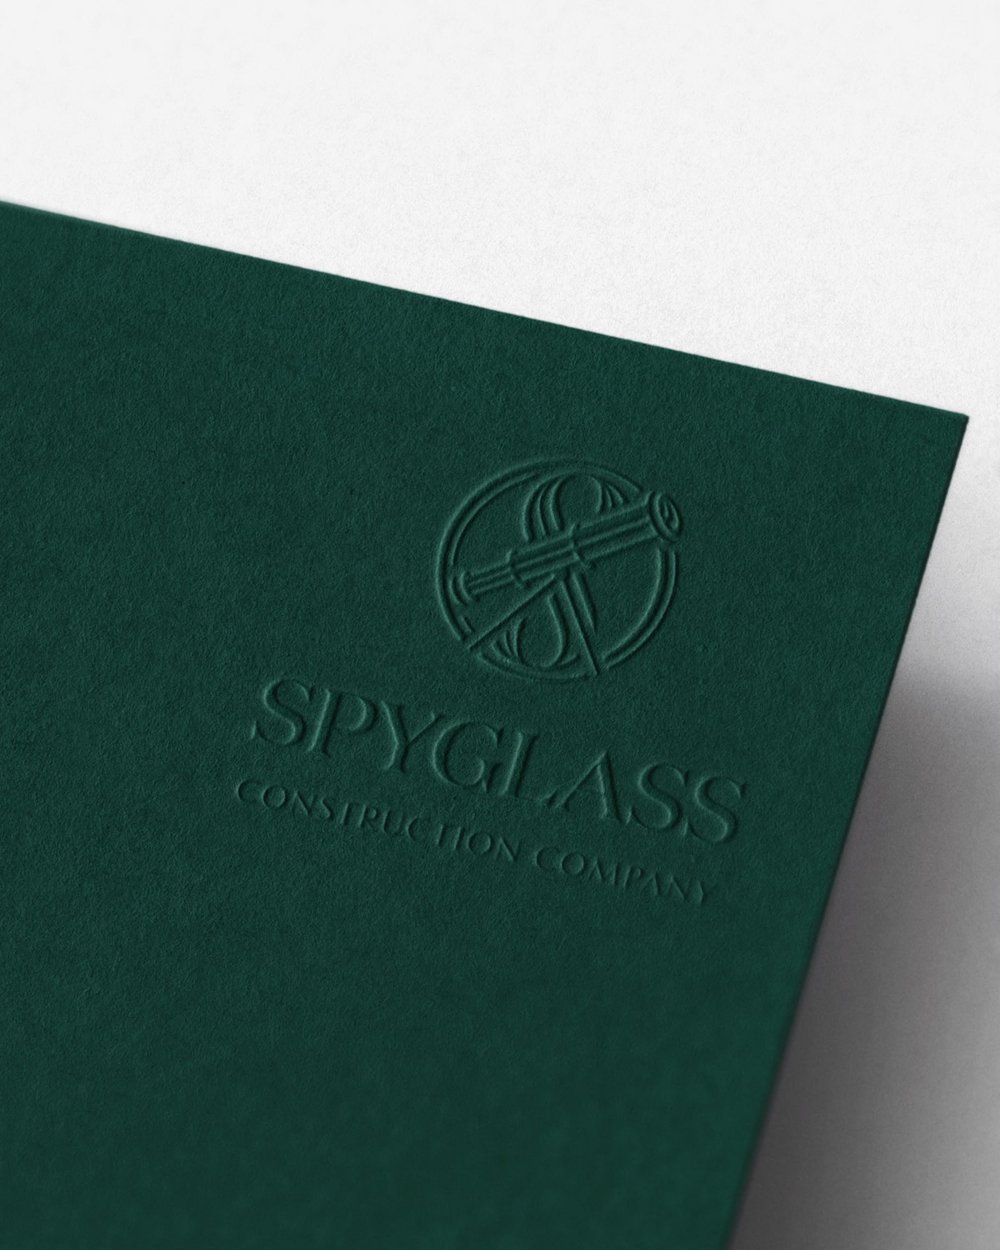 Spyglass Construction logo